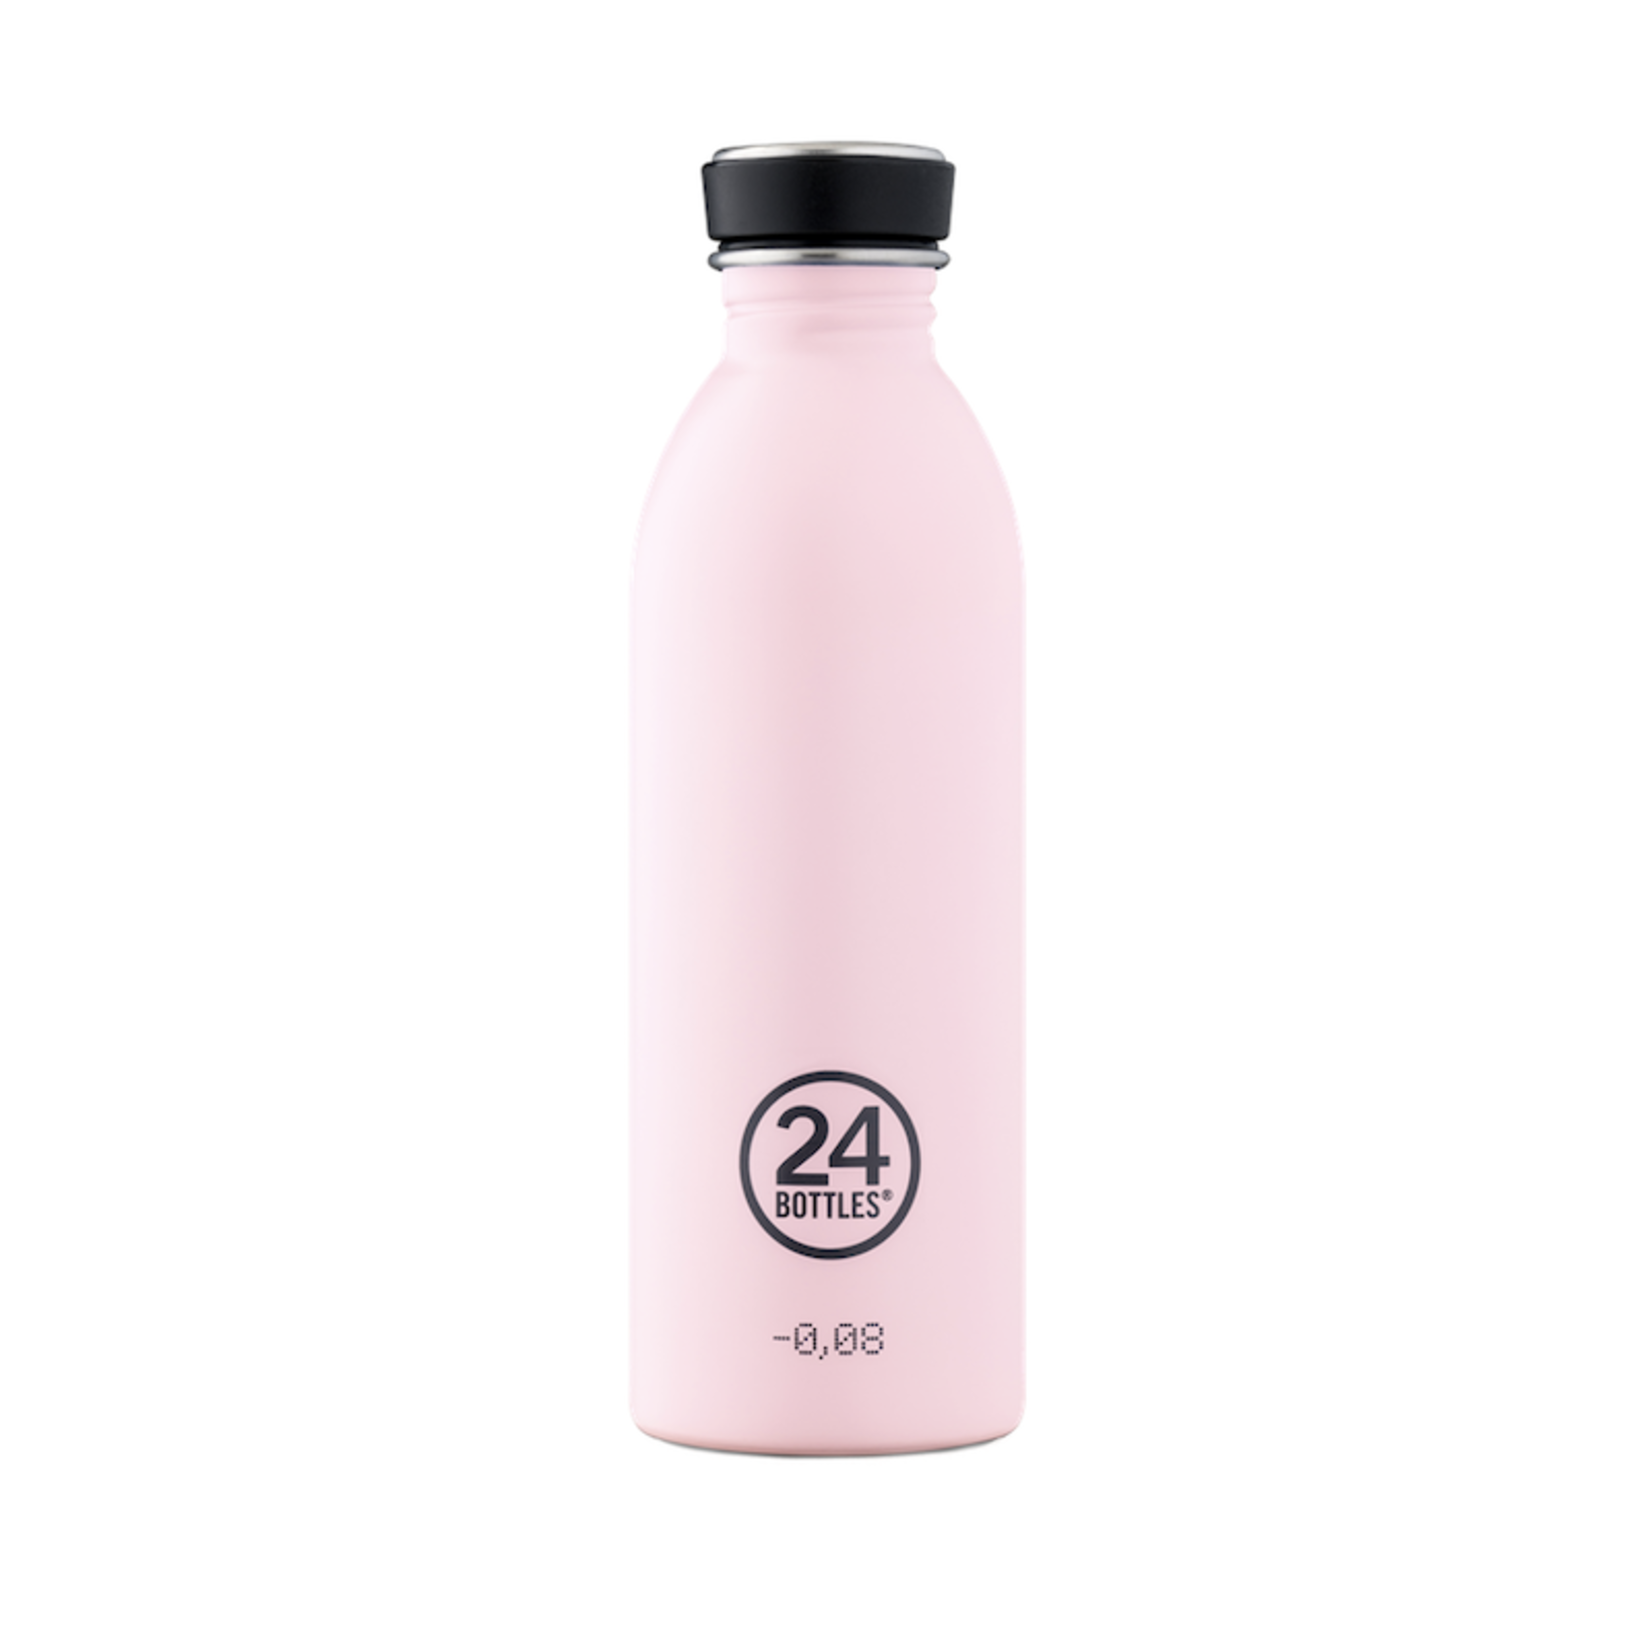 24 bottles 24 bottles - Urban bottle - dusty pink